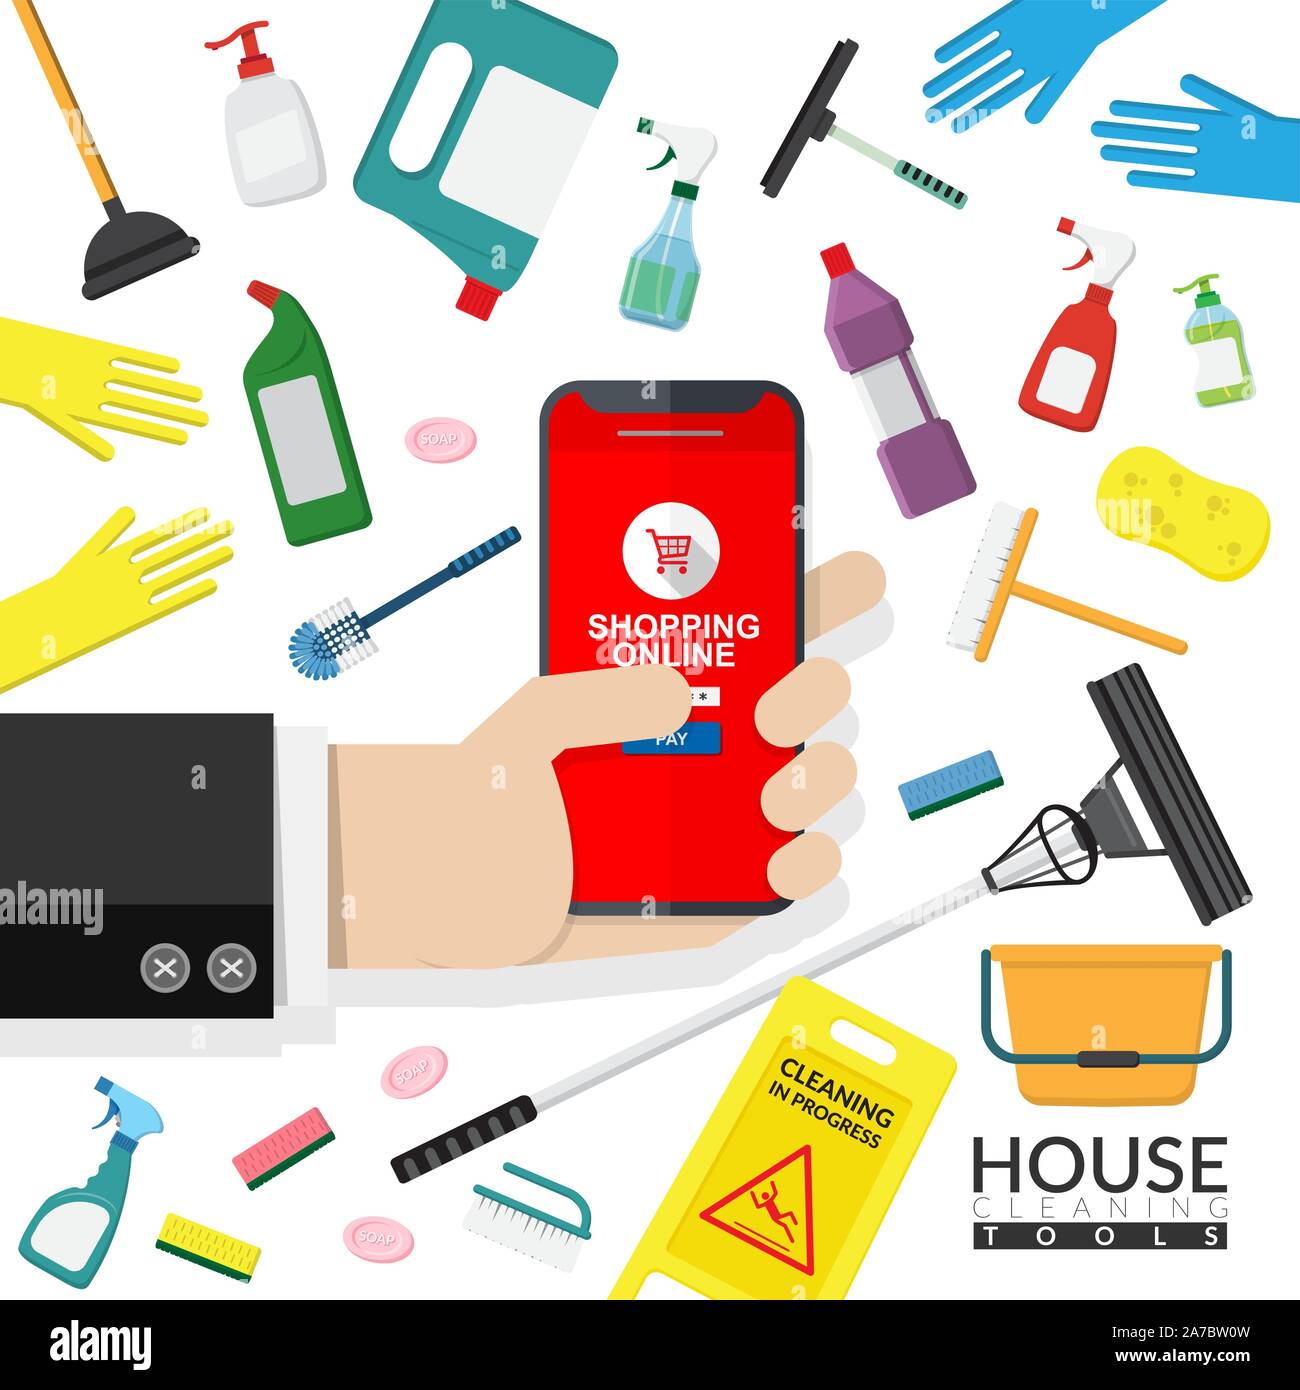 Der Vektor der online Werbung der Reinigung Werkzeuge Vertrieb. Hand Handy für Online Shopping mit Haushaltswaren Reinigungsmittel, auszurüsten Stock Vektor